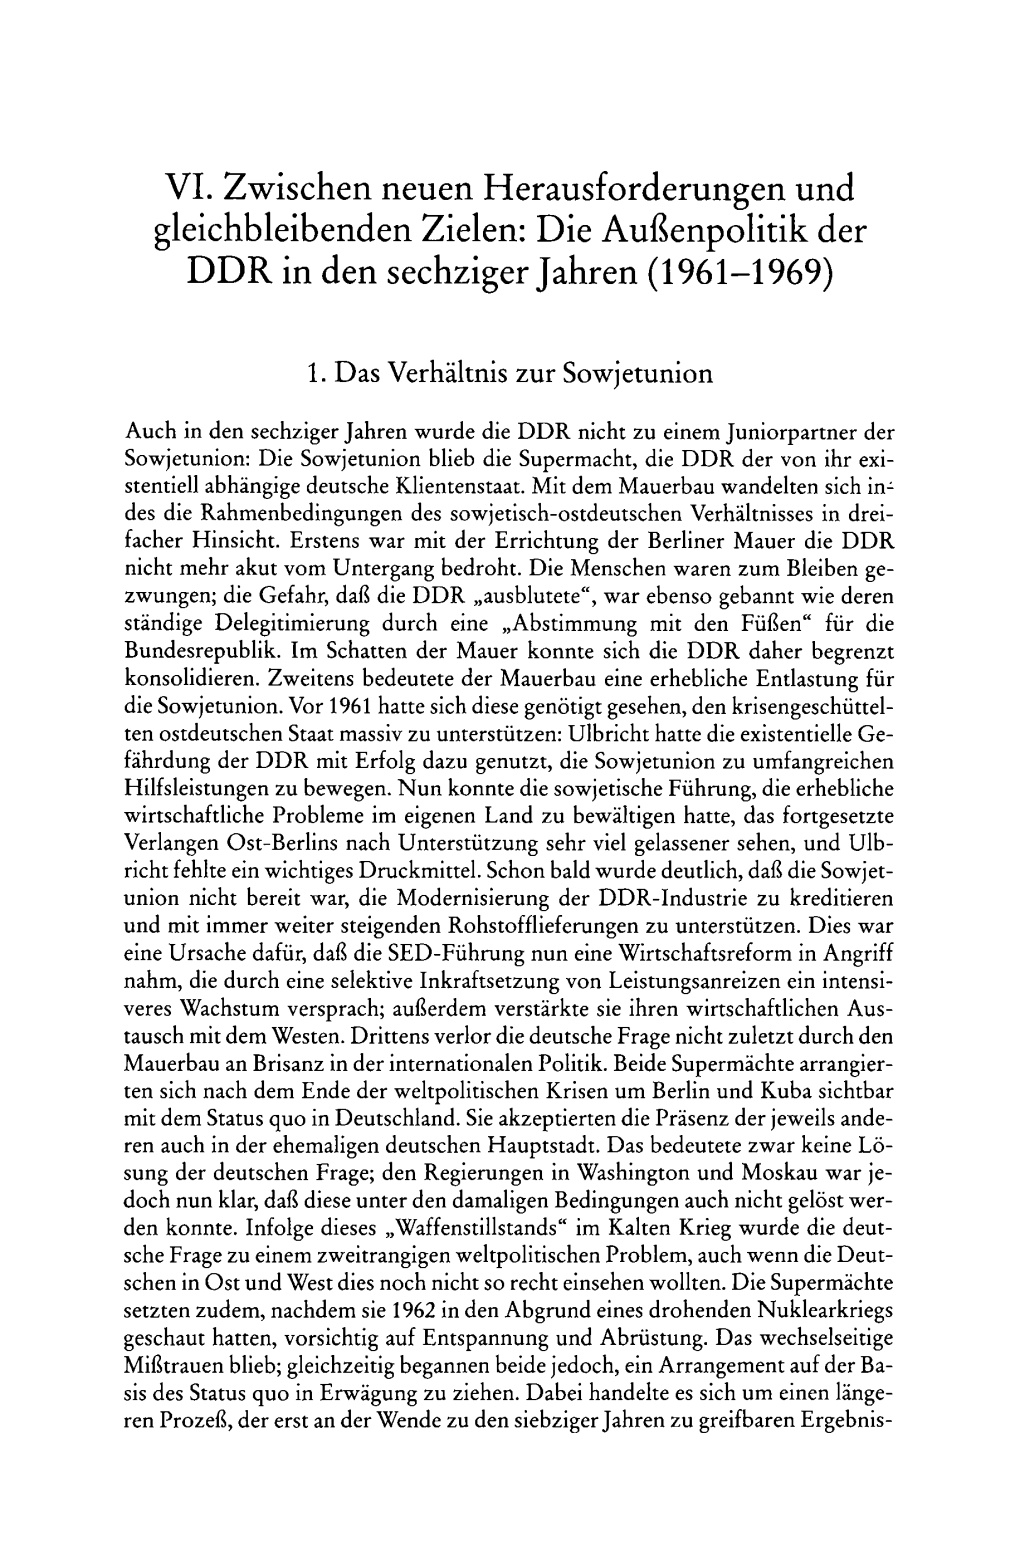 Die Außenpolitik Der DDR in Den Sechziger Jahren (1961-1969)